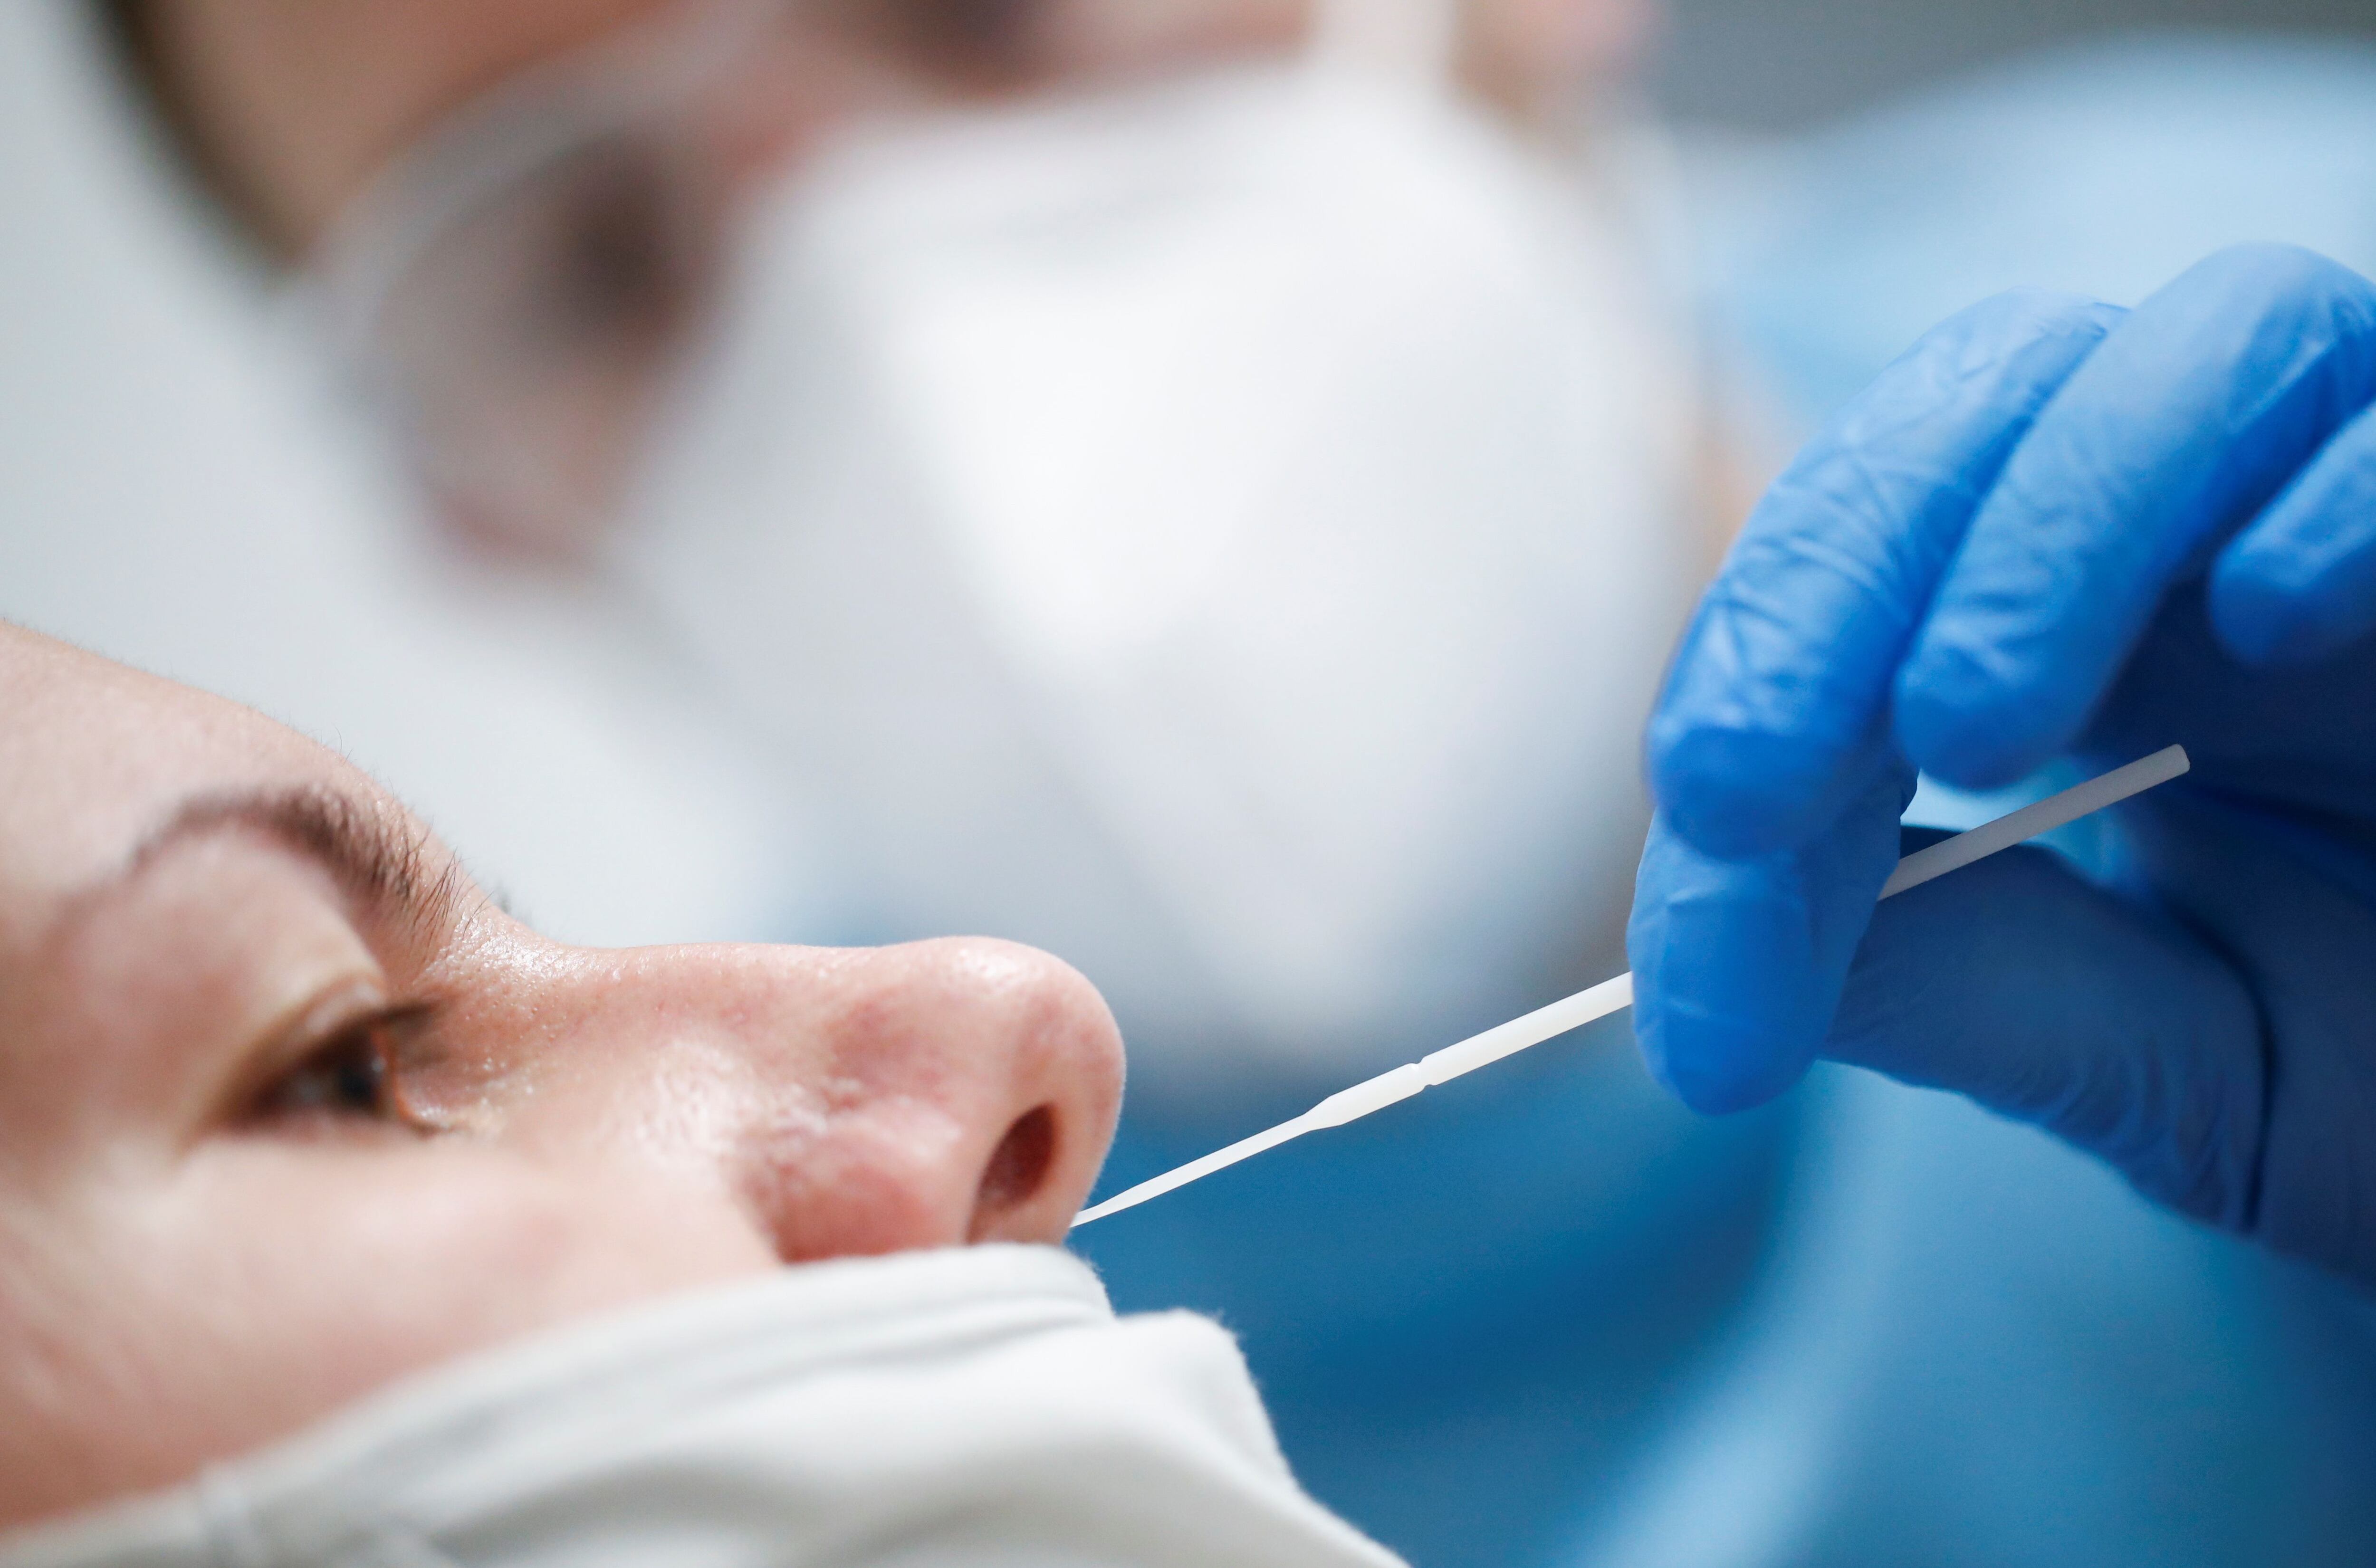 El test nasal que busca el biomarcador se podría usar a nivel masivo. Cuando se detecta el biomarcador, la muestra se pasaría a analizar por secuenciación genómica con más profundidad/ REUTERS/Stephane Mahe